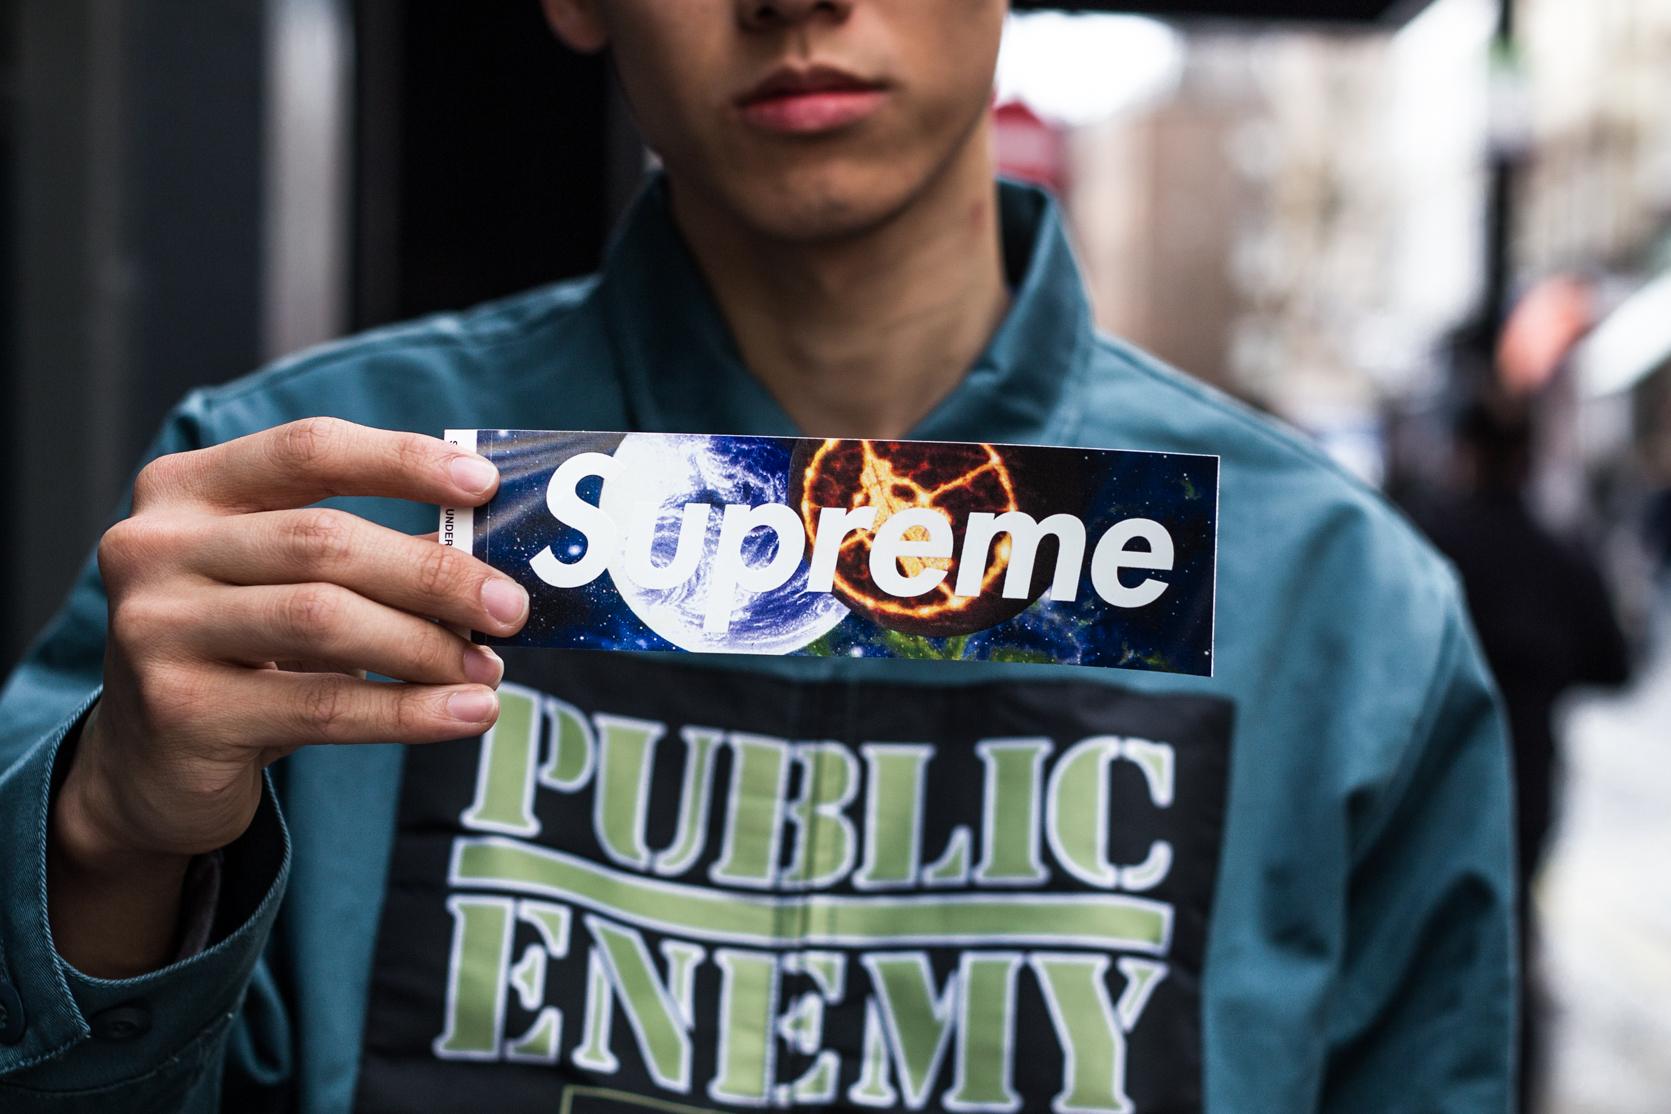 Supreme x Public Enemy